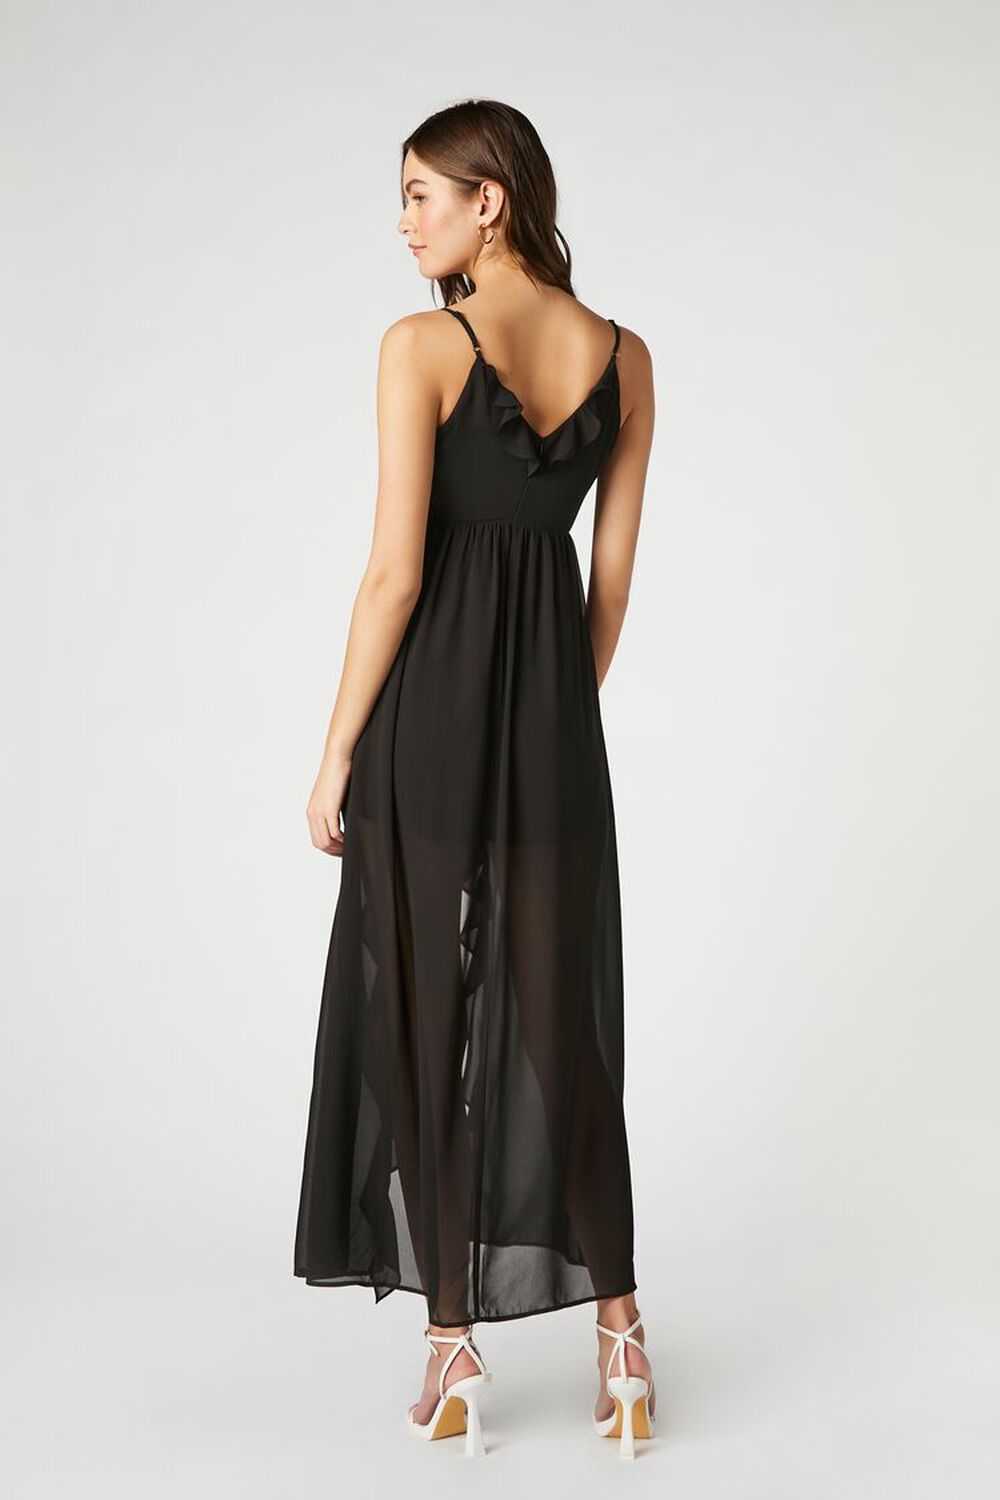 BLACK Chiffon Ruffle High-Low Dress, image 3